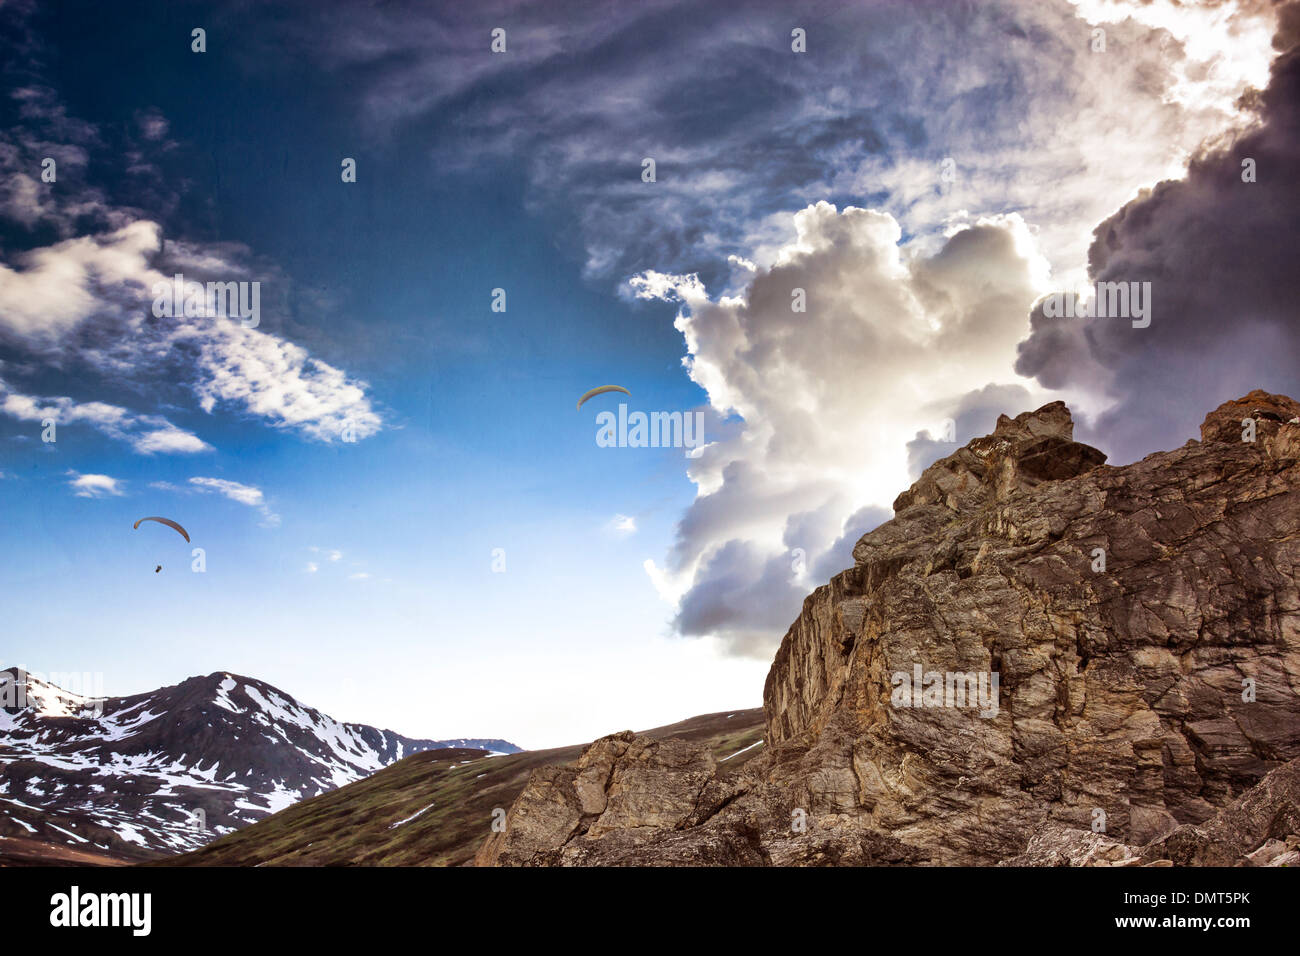 Hängegleiter Segelfliegen in dramatische Wolken über Berggipfel mit Texturen hinzugefügt für einen Fantasy-Look. Stockfoto